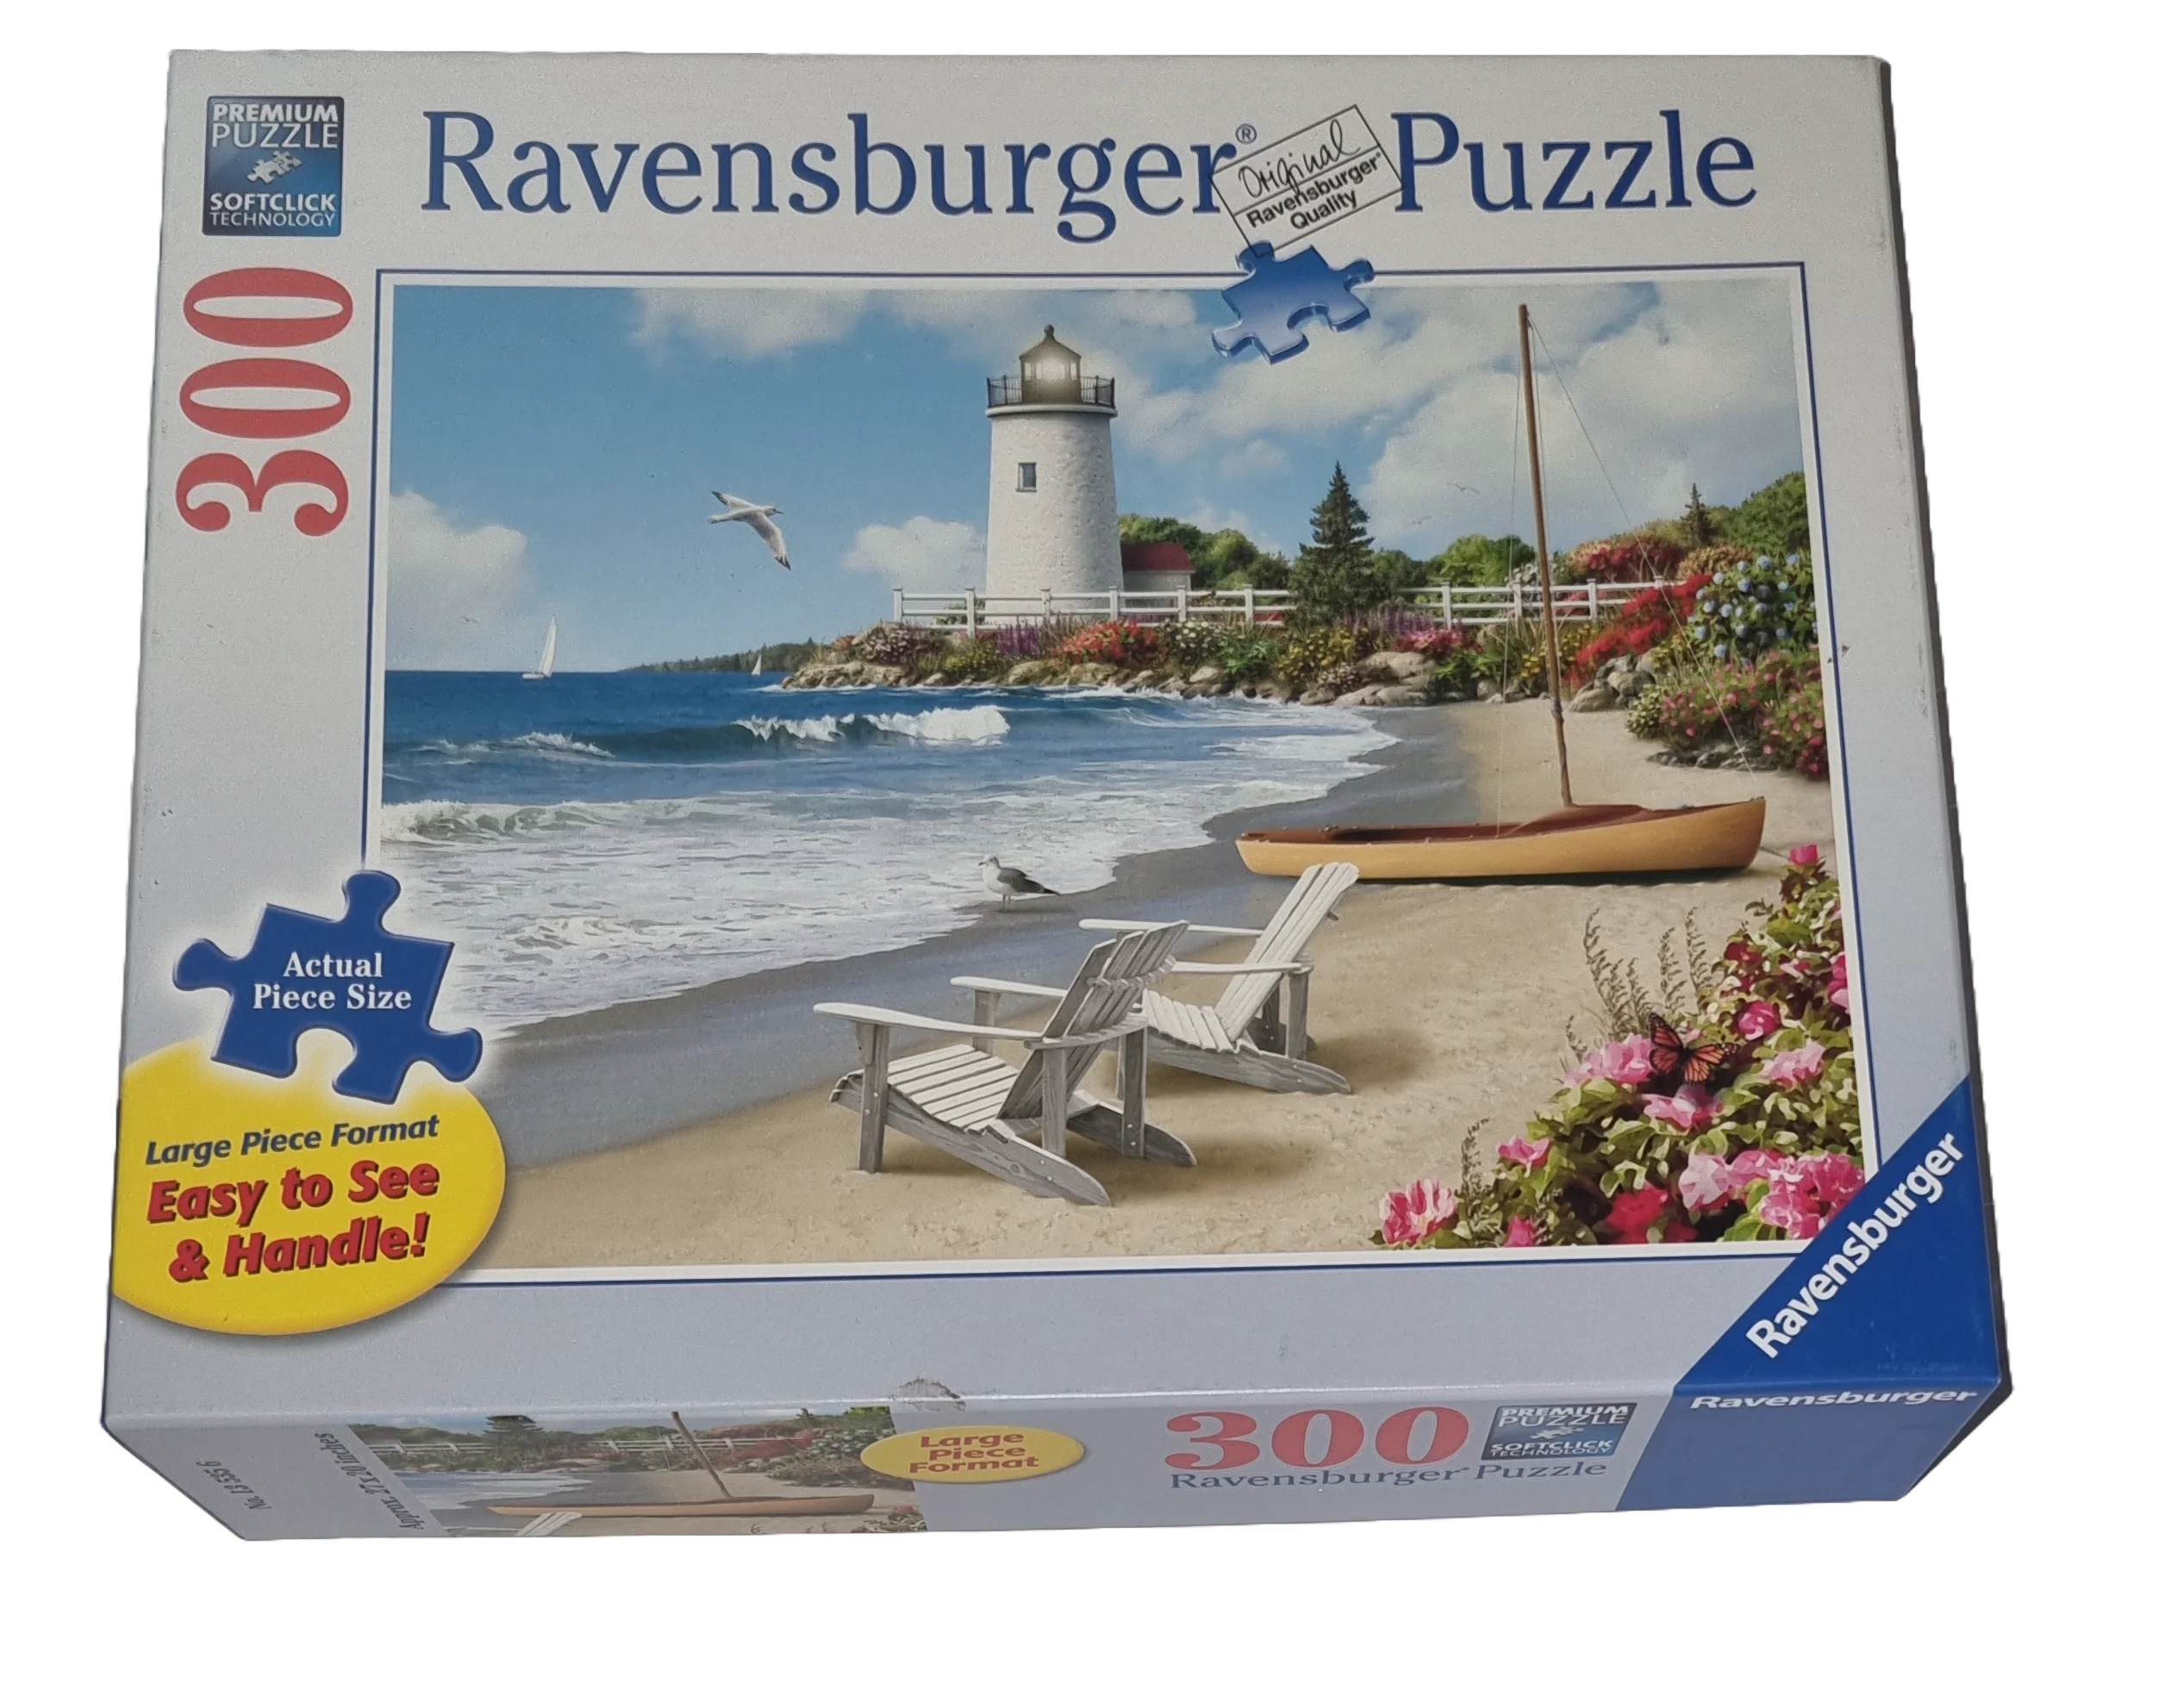 Ravensburger Premium softclick Puzzle 300 Teile Large Piece Format 135356 Sunlit Shores